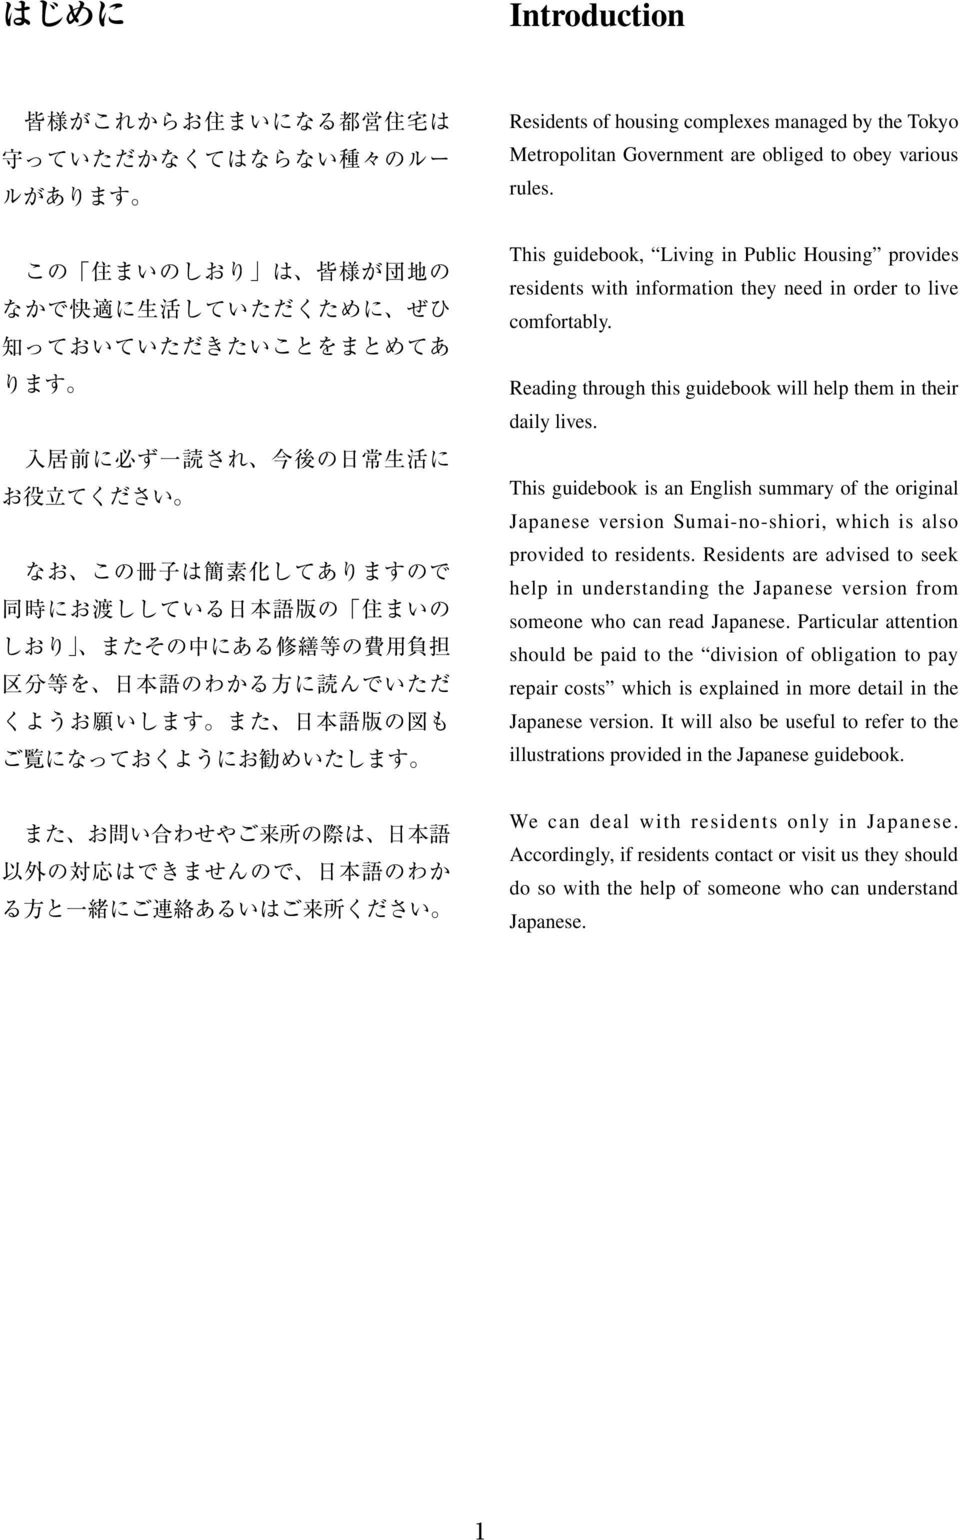 の 際 は 日 本 語 以 外 の 対 応 はできませんので 日 本 語 のわか る 方 と 一 緒 にご 連 絡 あるいはご 来 所 ください Residents of housing complexes managed by the Tokyo Metropolitan Government are obliged to obey various rules.